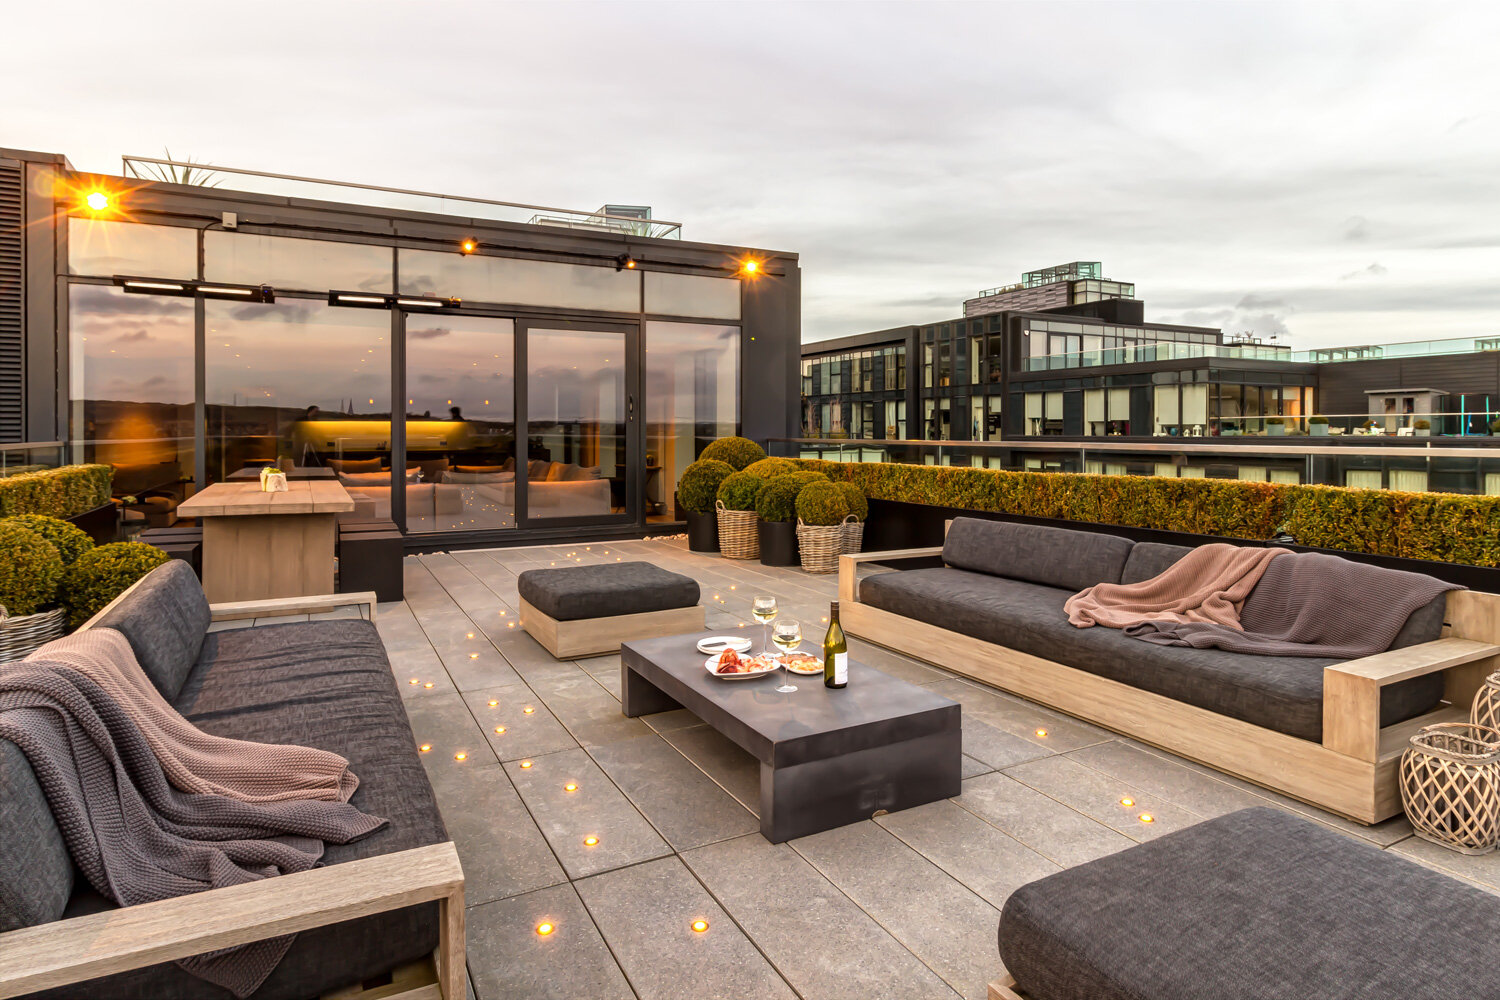 Quartermile Roof Garden Design Edinburgh